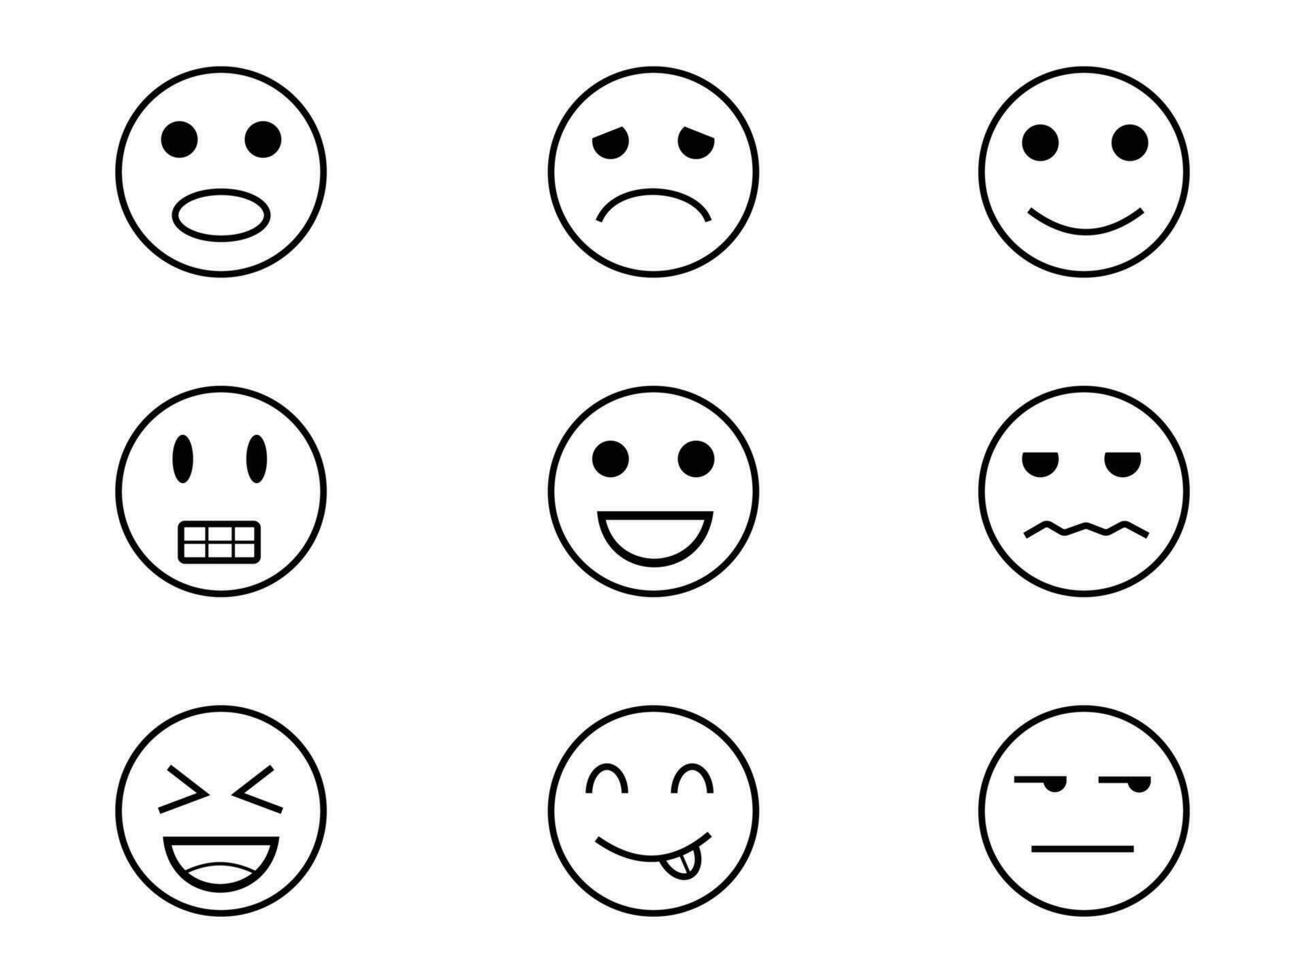 círculo do emojis mostrando diferente vetor de emoções ilustração